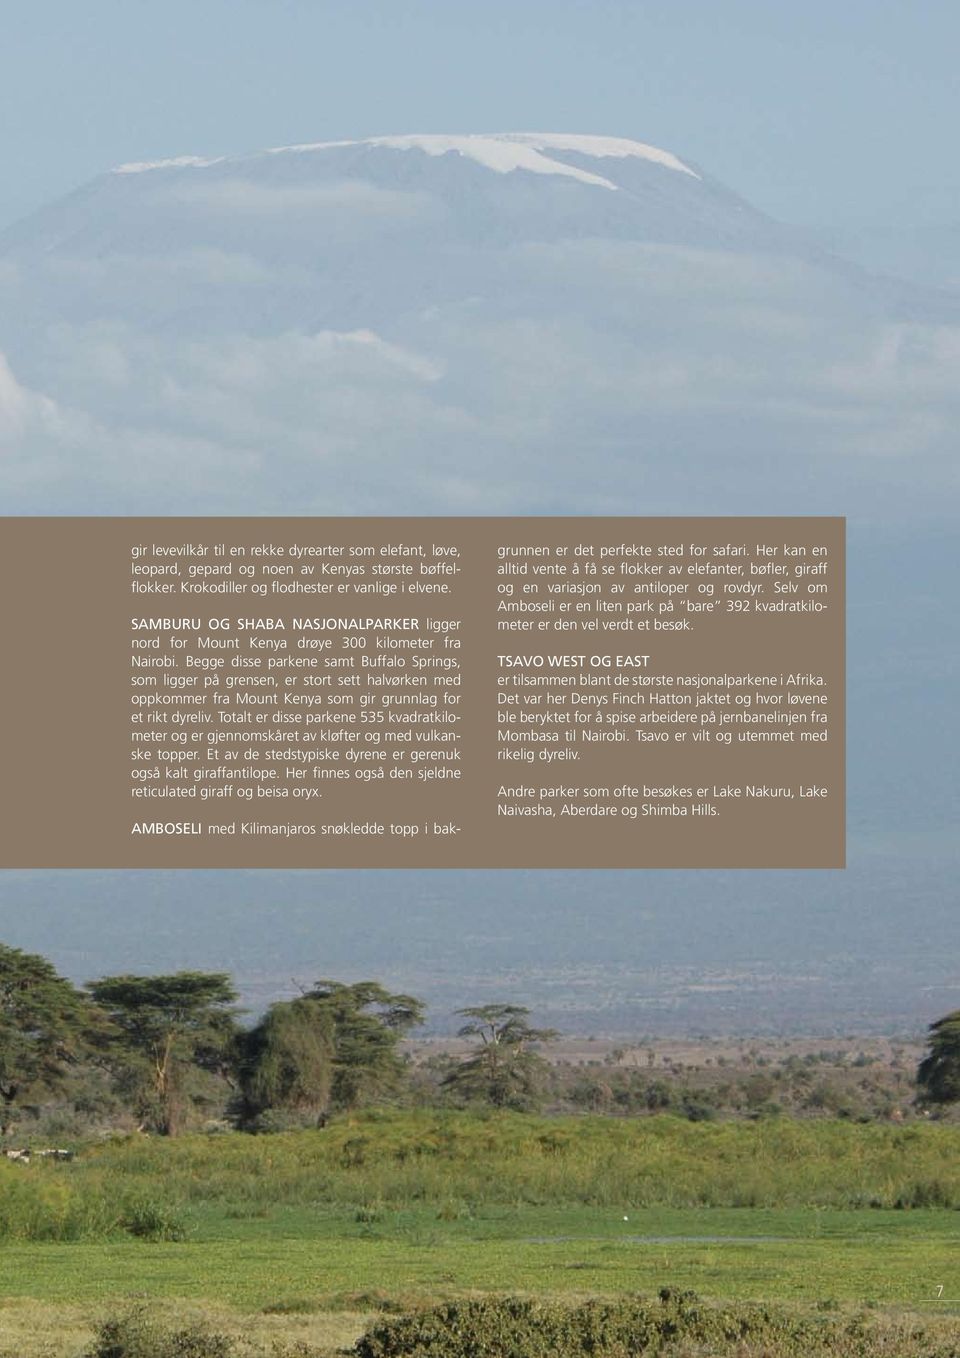 Begge disse parkene samt Buffalo Springs, som ligger på grensen, er stort sett halvørken med oppkommer fra Mount Kenya som gir grunnlag for et rikt dyreliv.